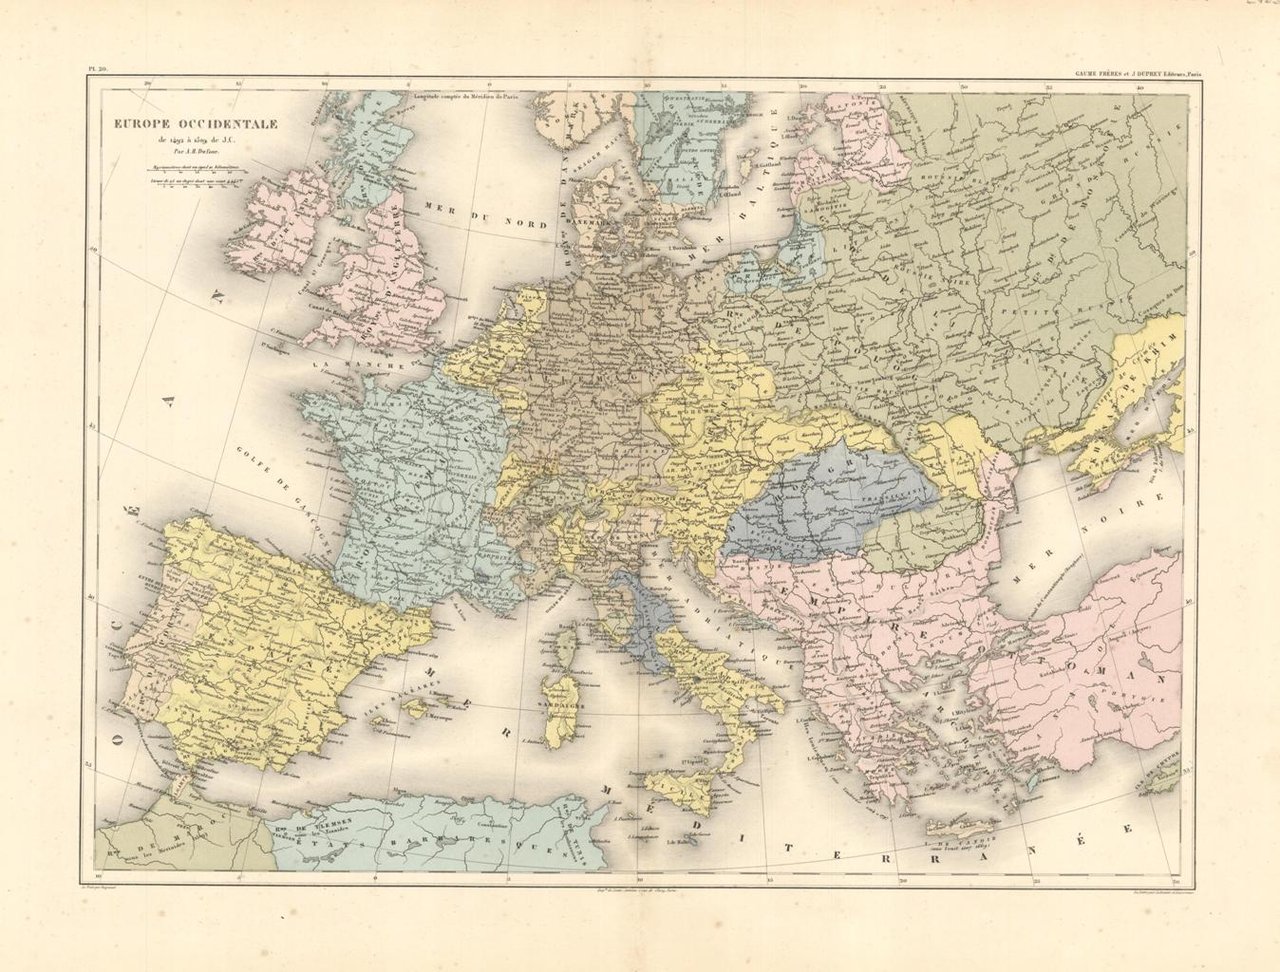 Europe occidentale de 1492 à 1519 de J. C.